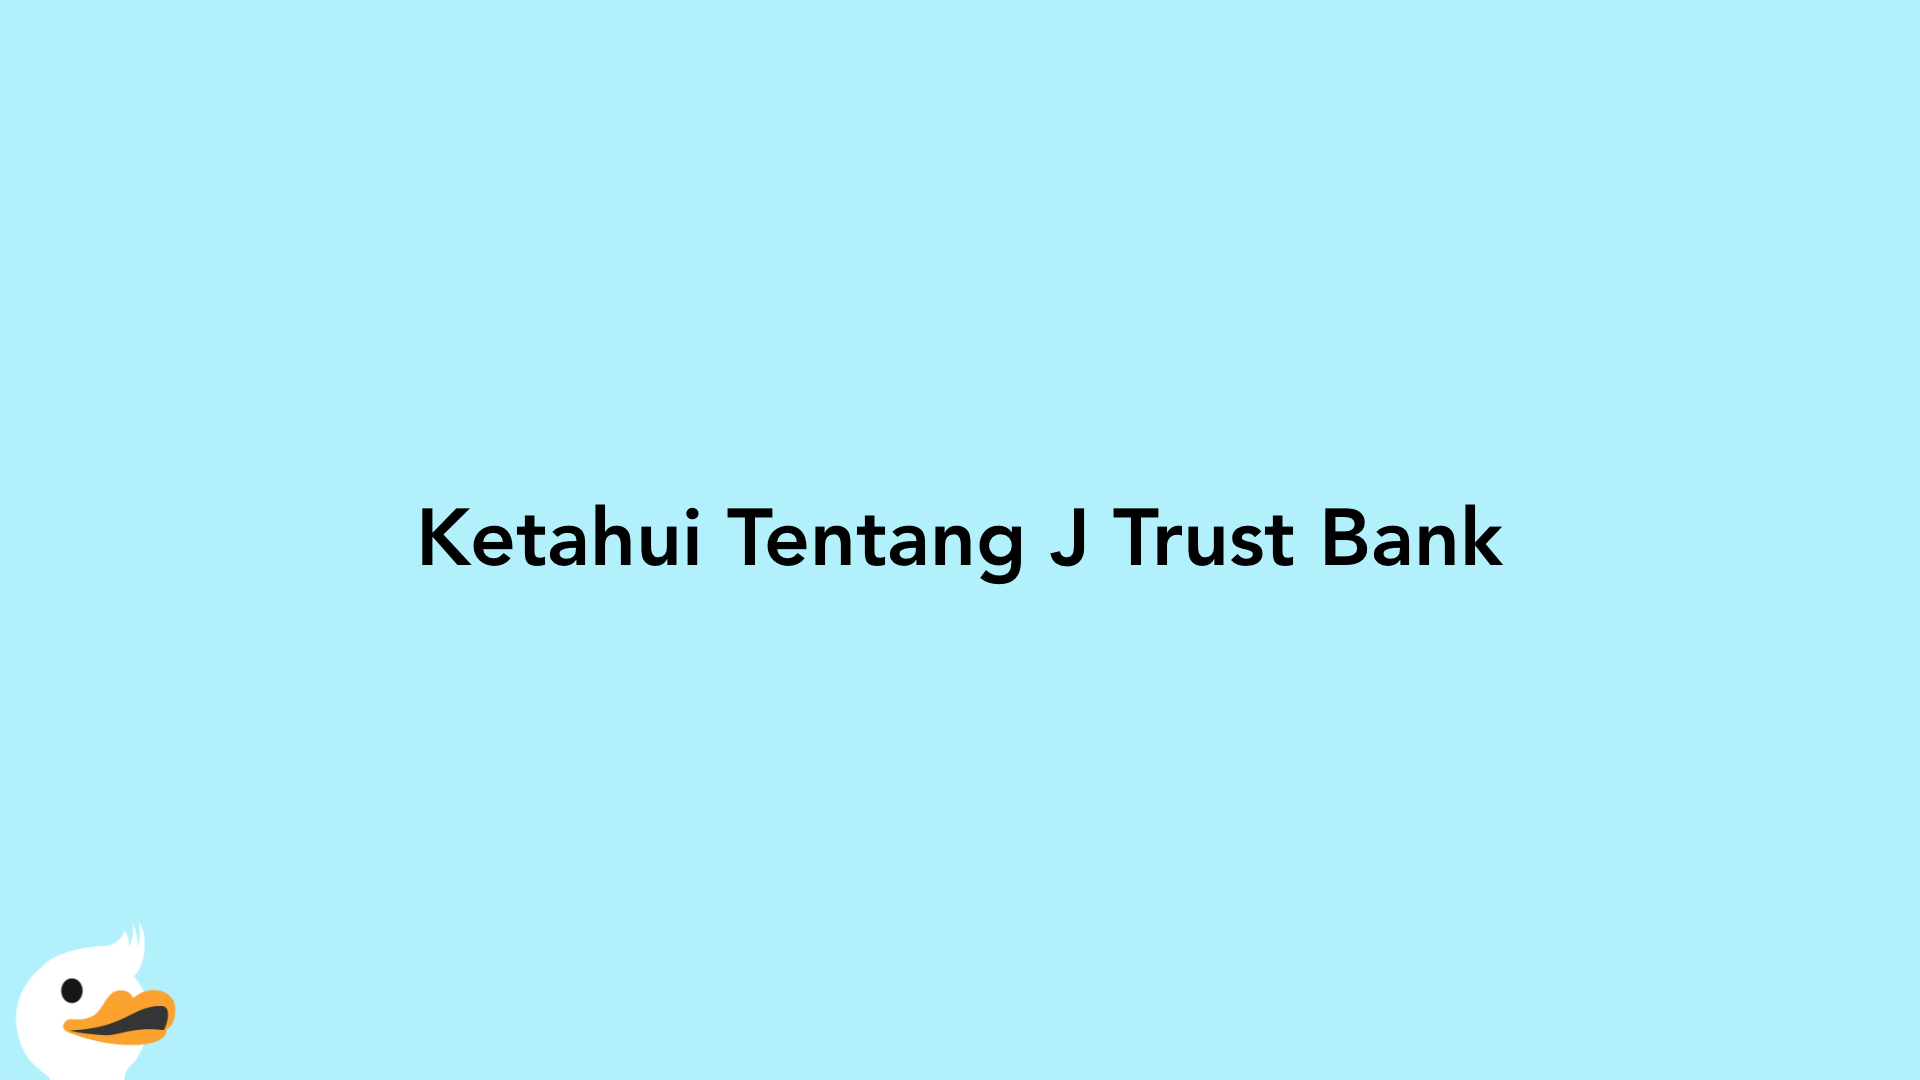 Ketahui Tentang J Trust Bank